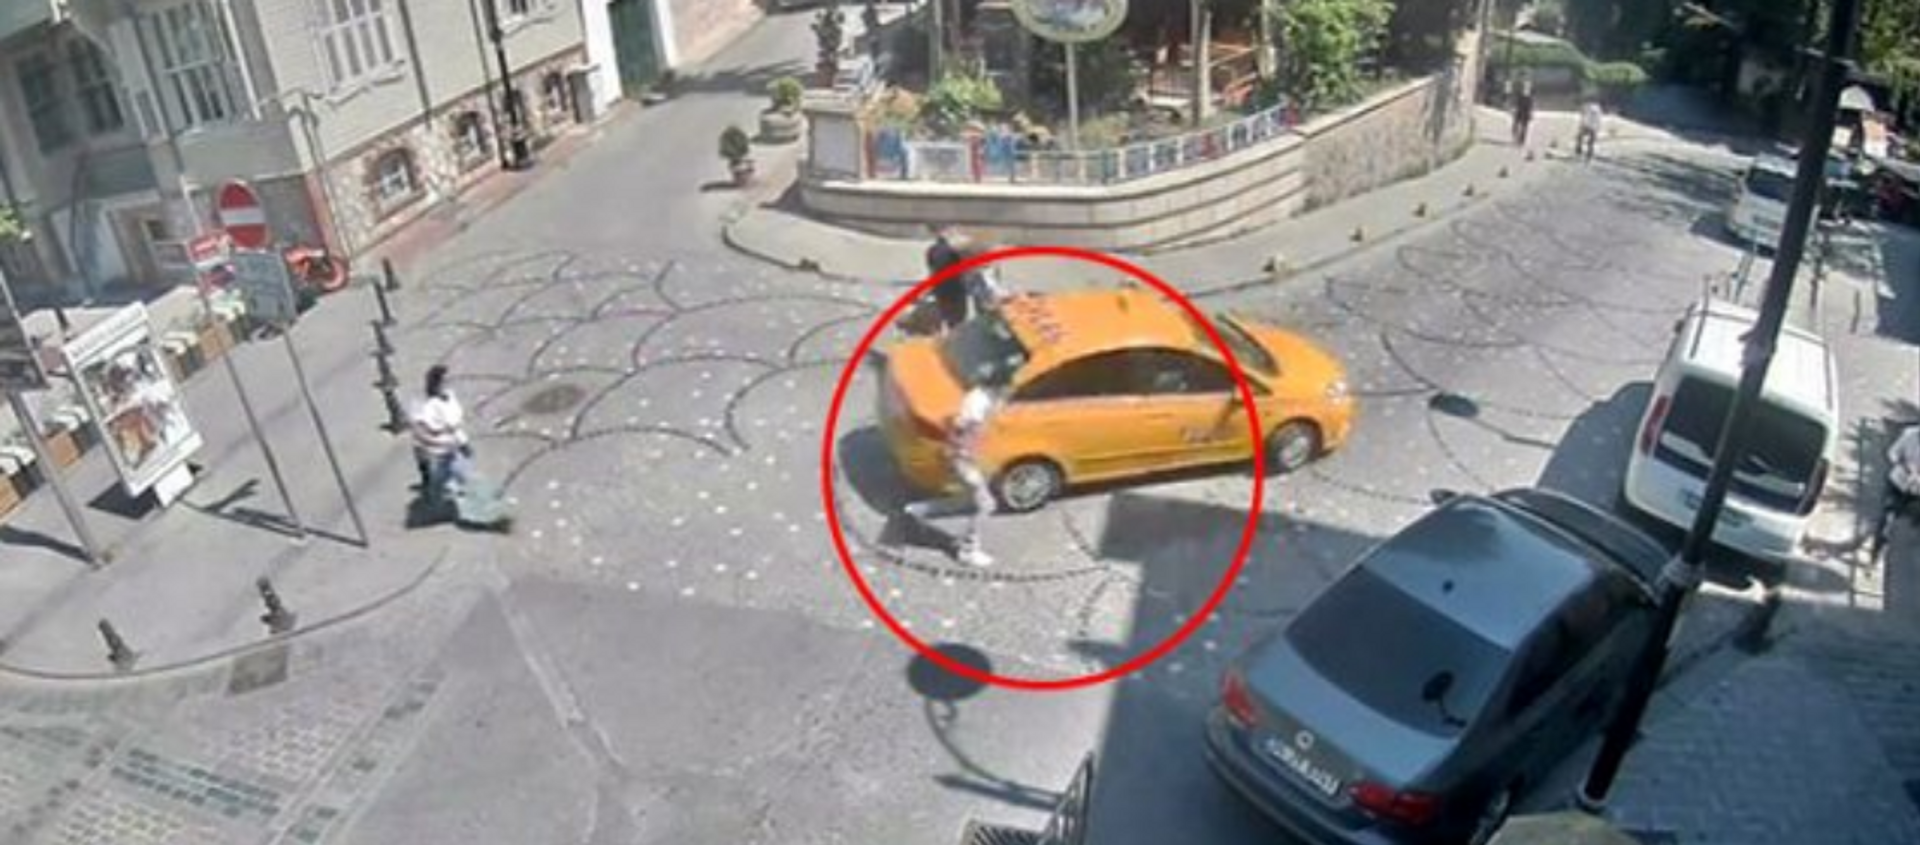 İstanbul'da taksici, turistin unuttuğu cep telefonunu çalıp kaçtı - Sputnik Türkiye, 1920, 17.08.2020